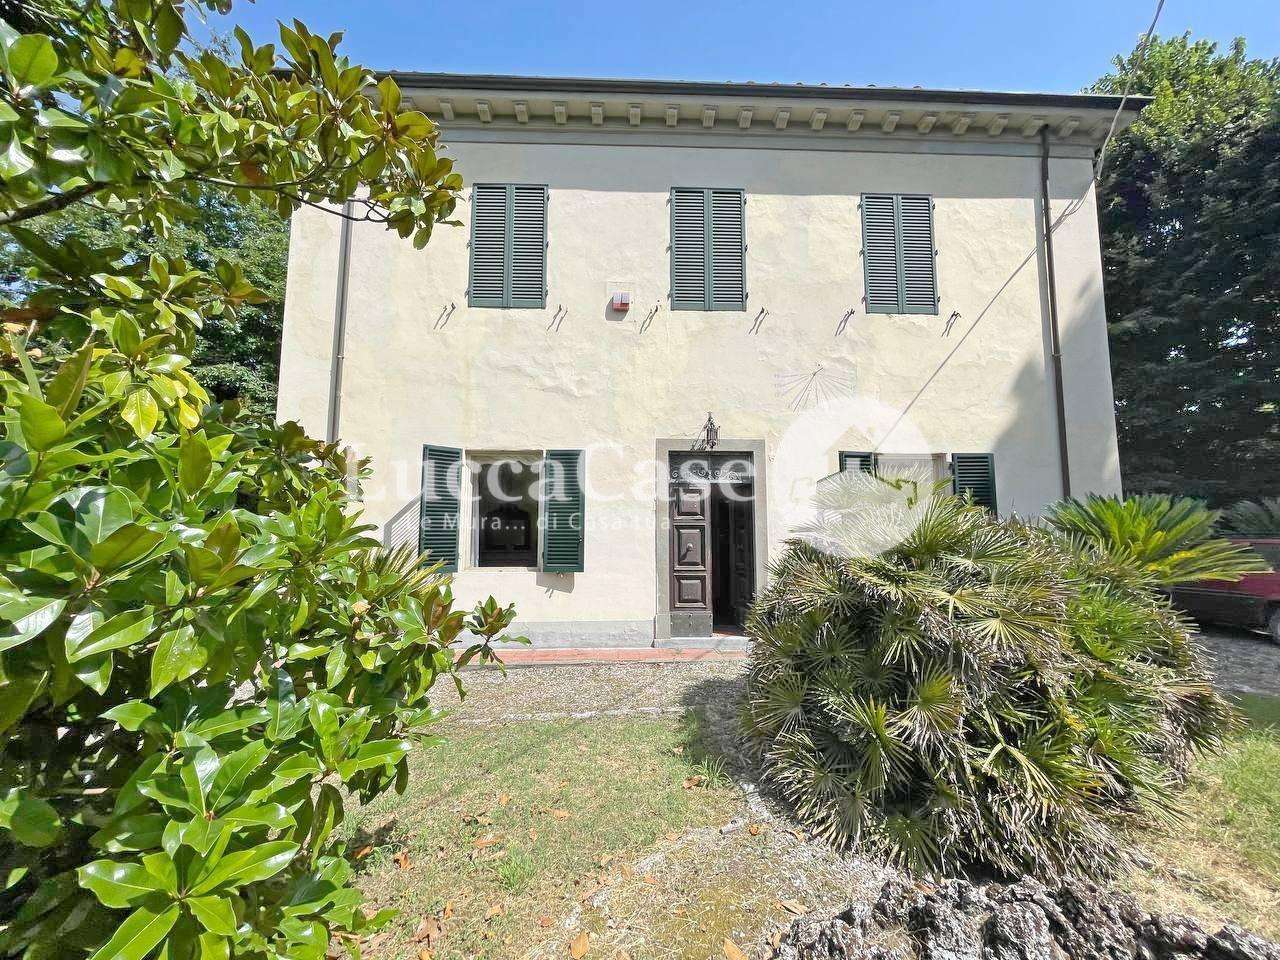 Palazzo - Stabile in Vendita a Lucca Ponte a Moriano LU, 55100